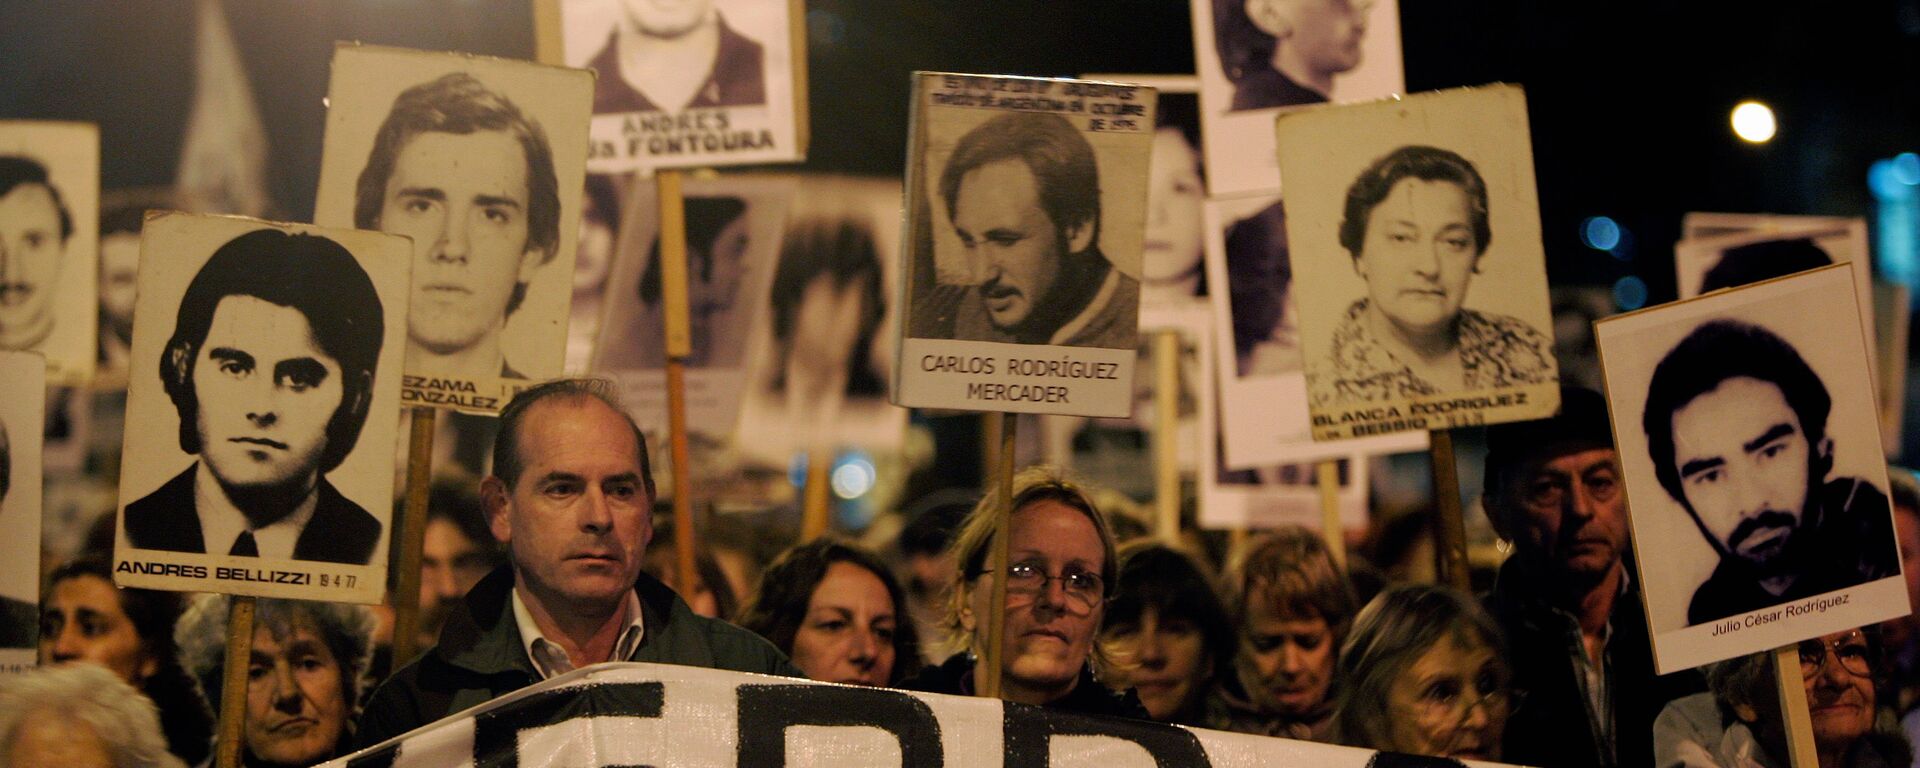 Marcha de Silencio en conmemoración de las víctimas de la dictadura de 1973-1985, 20 de mayo de 2088, Montevideo, Uruguay - Sputnik Mundo, 1920, 28.08.2020